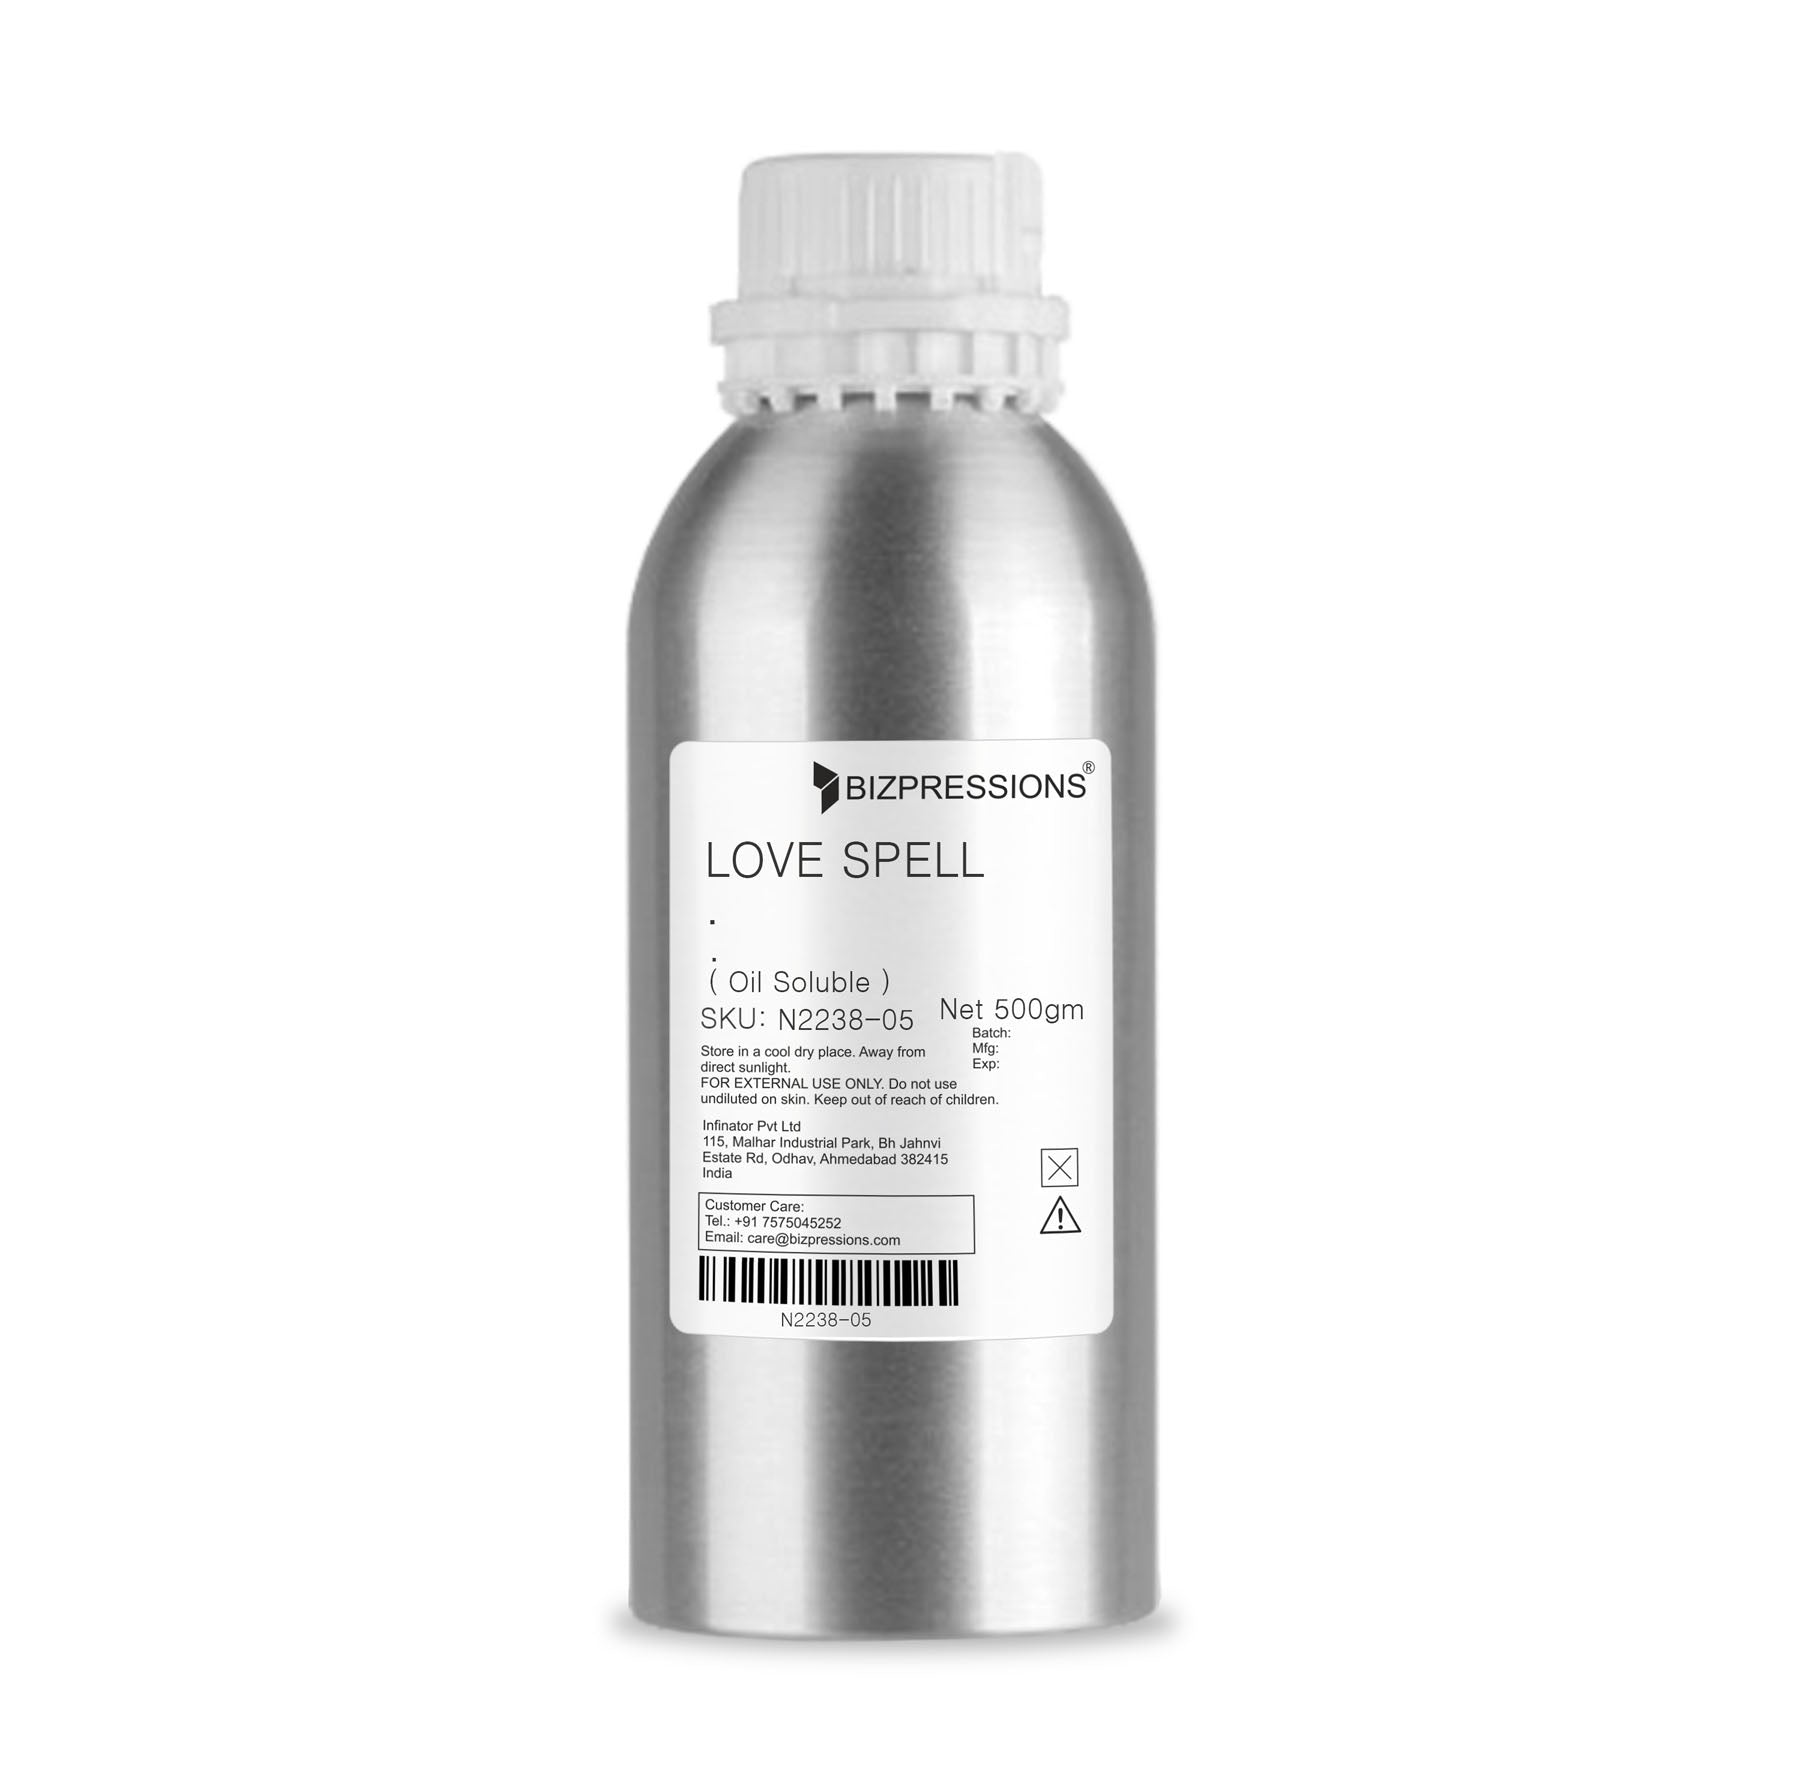 LOVE SPELL - Fragrance ( Oil Soluble ) - 500 gm